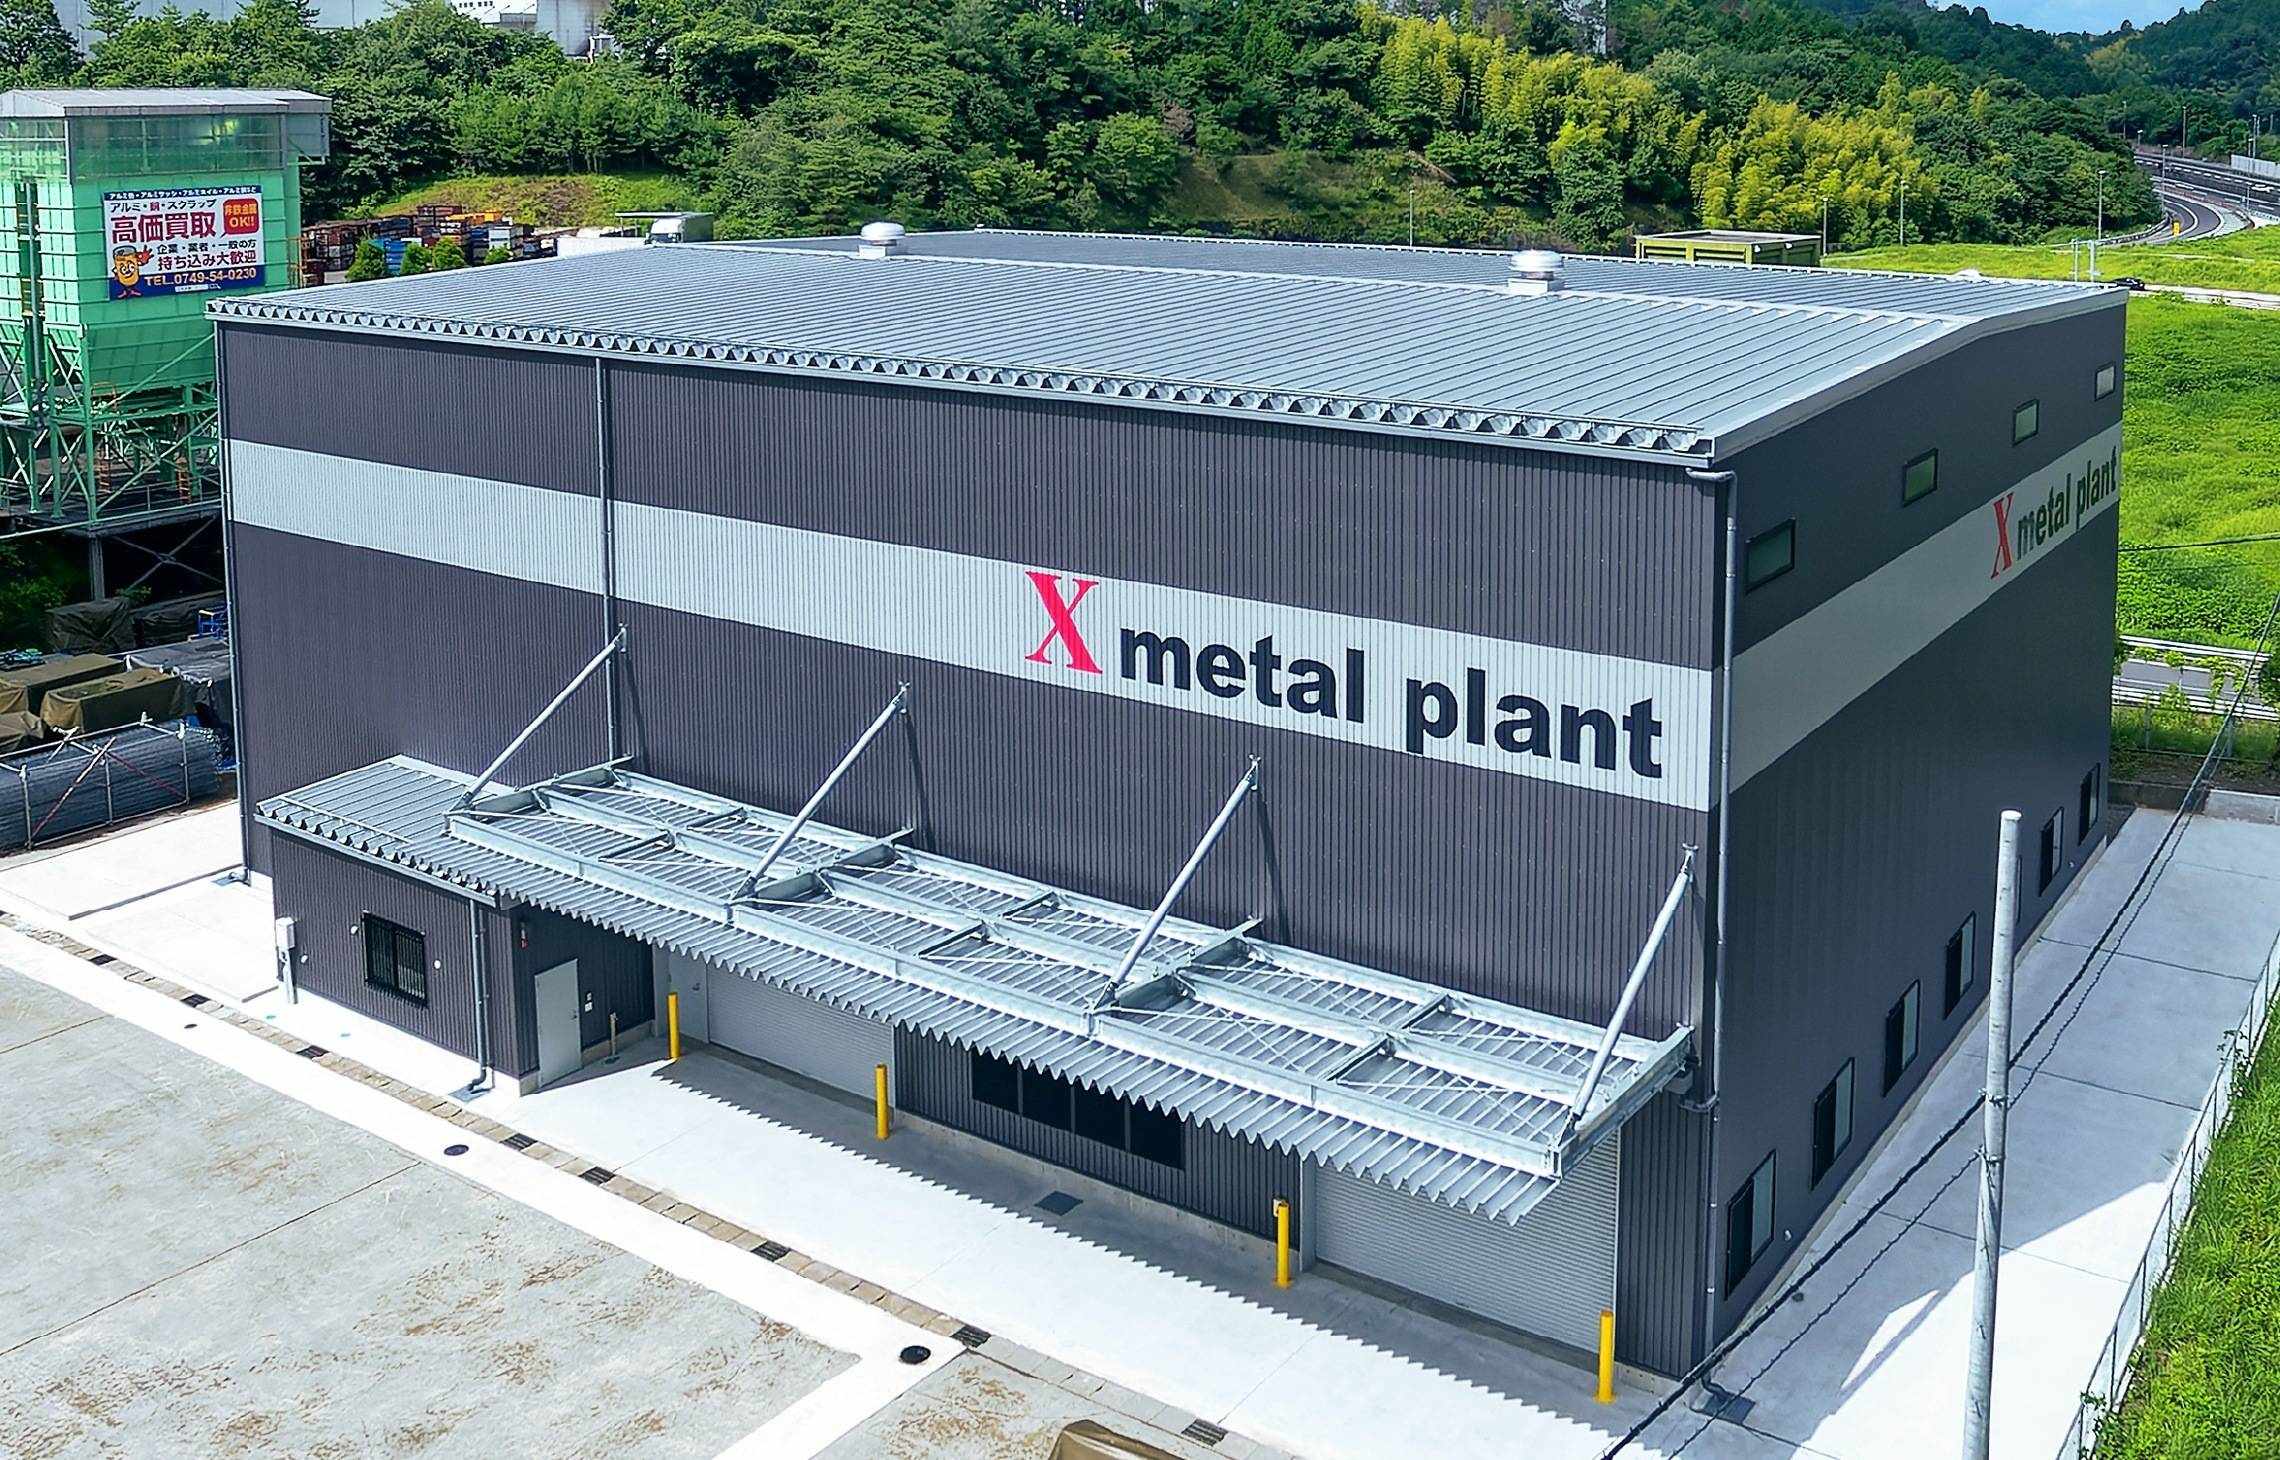 レアメタル・貴金属の回収技術に特化した新工場「X metal plant」